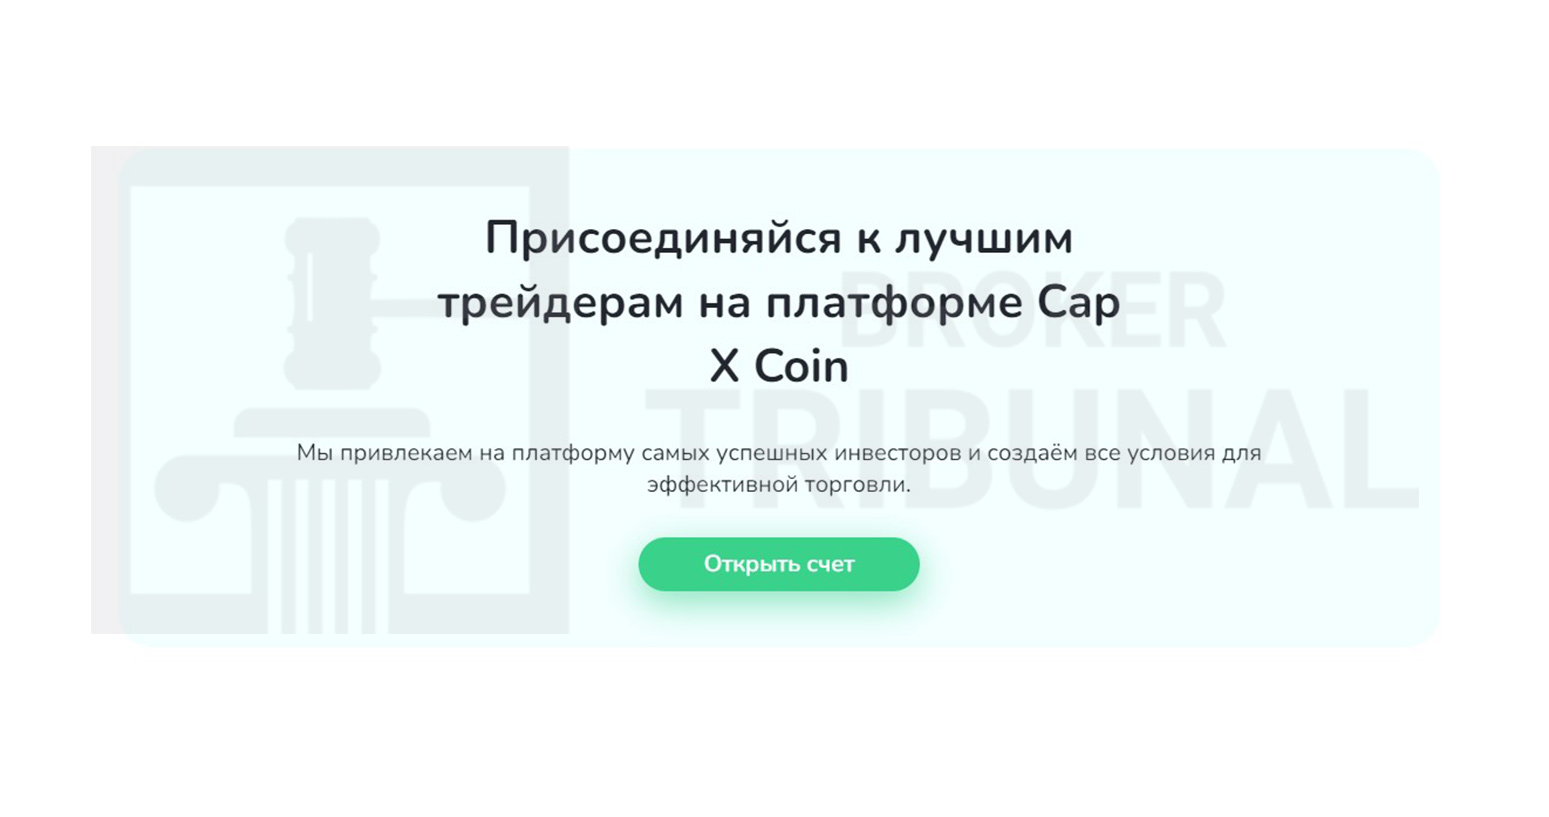 Cap X Coin